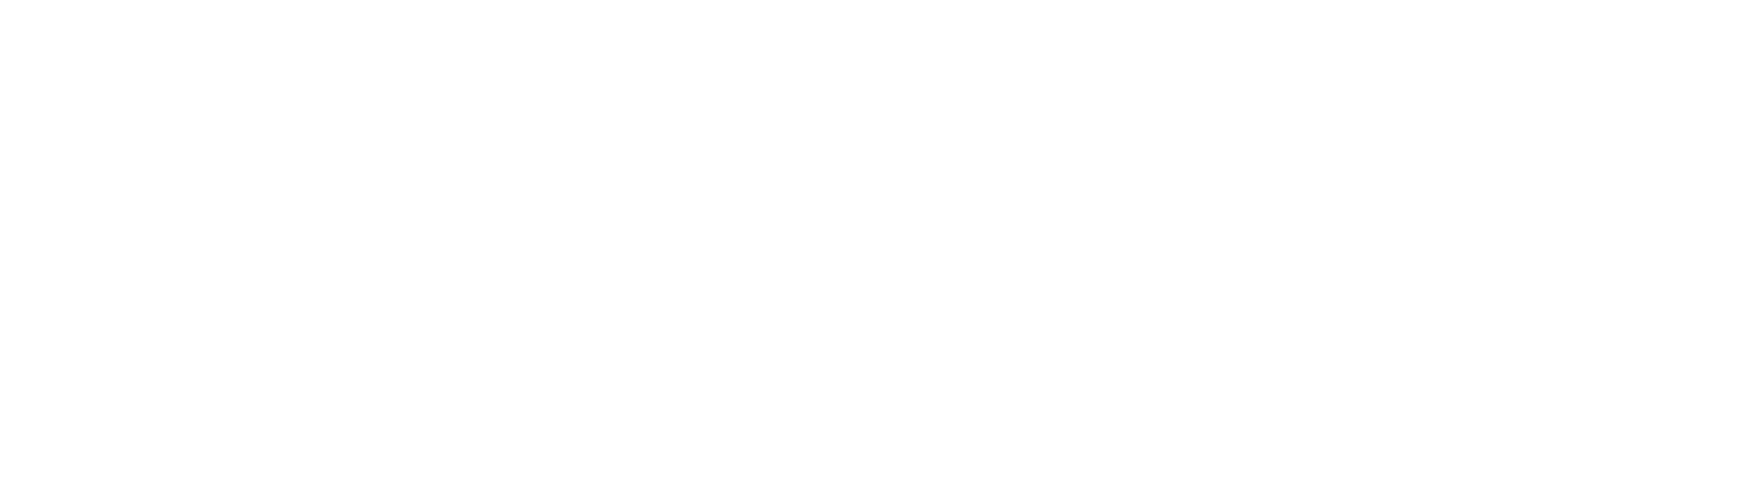 Thor Industries
 Logo groß für dunkle Hintergründe (transparentes PNG)